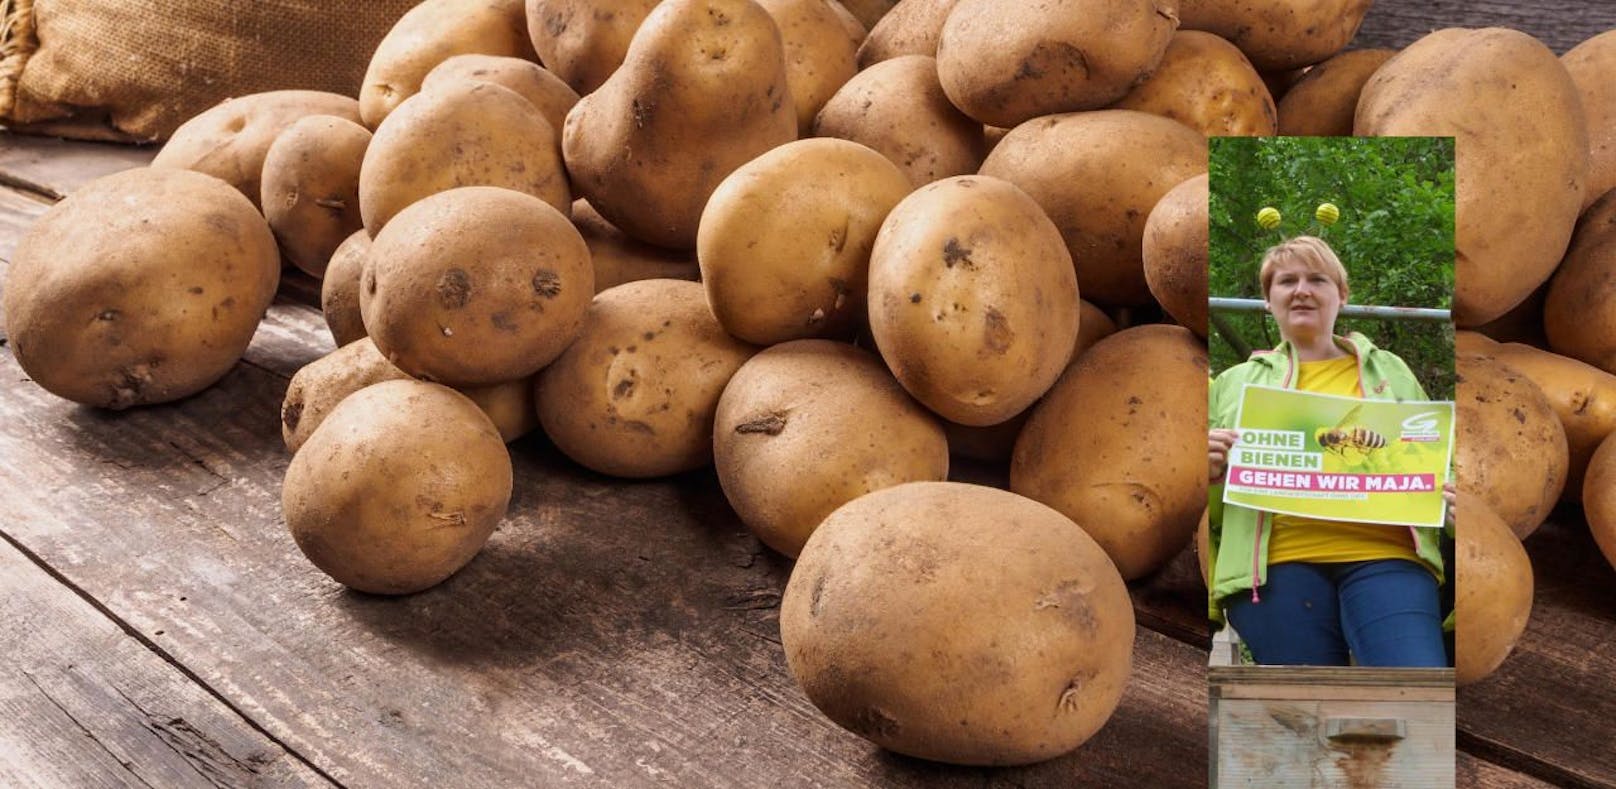 Helga Krismer warnt vor MOCAP15 - Pflanzenschutz für Kartoffel.